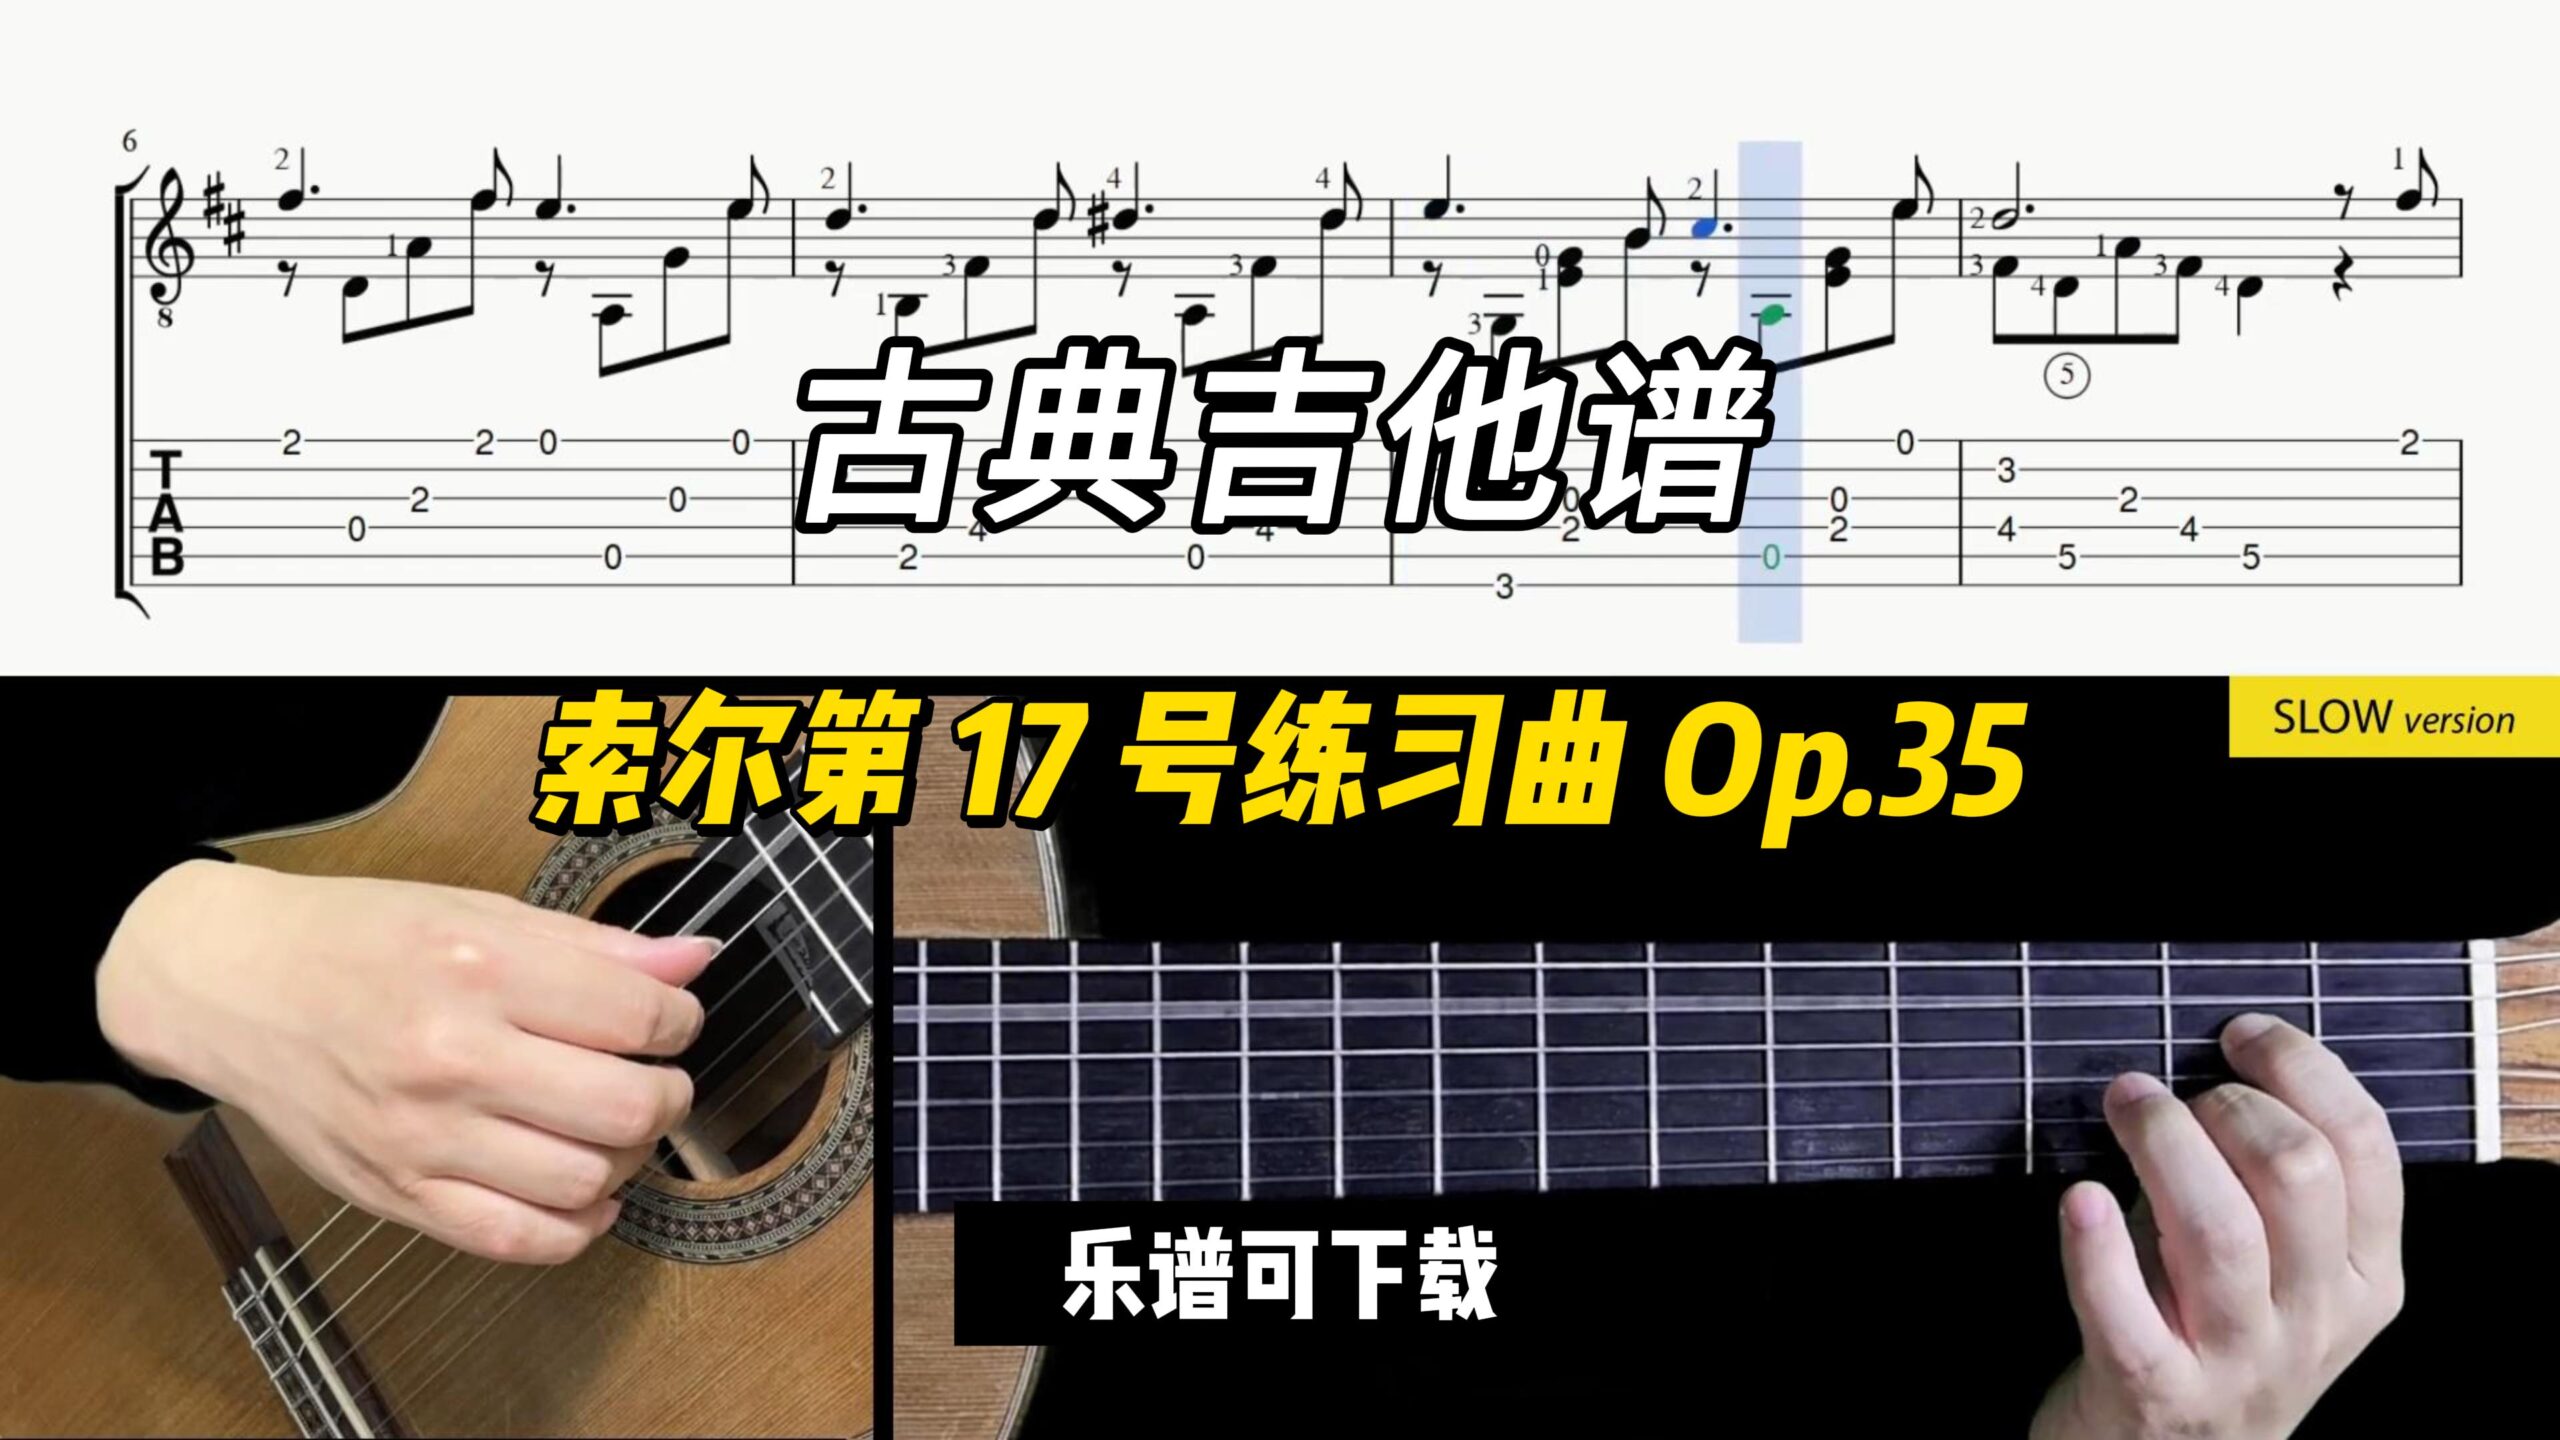 【Sky Guitar】索尔第 17 号练习曲 Op.35（乐谱可下载）-古桐博客